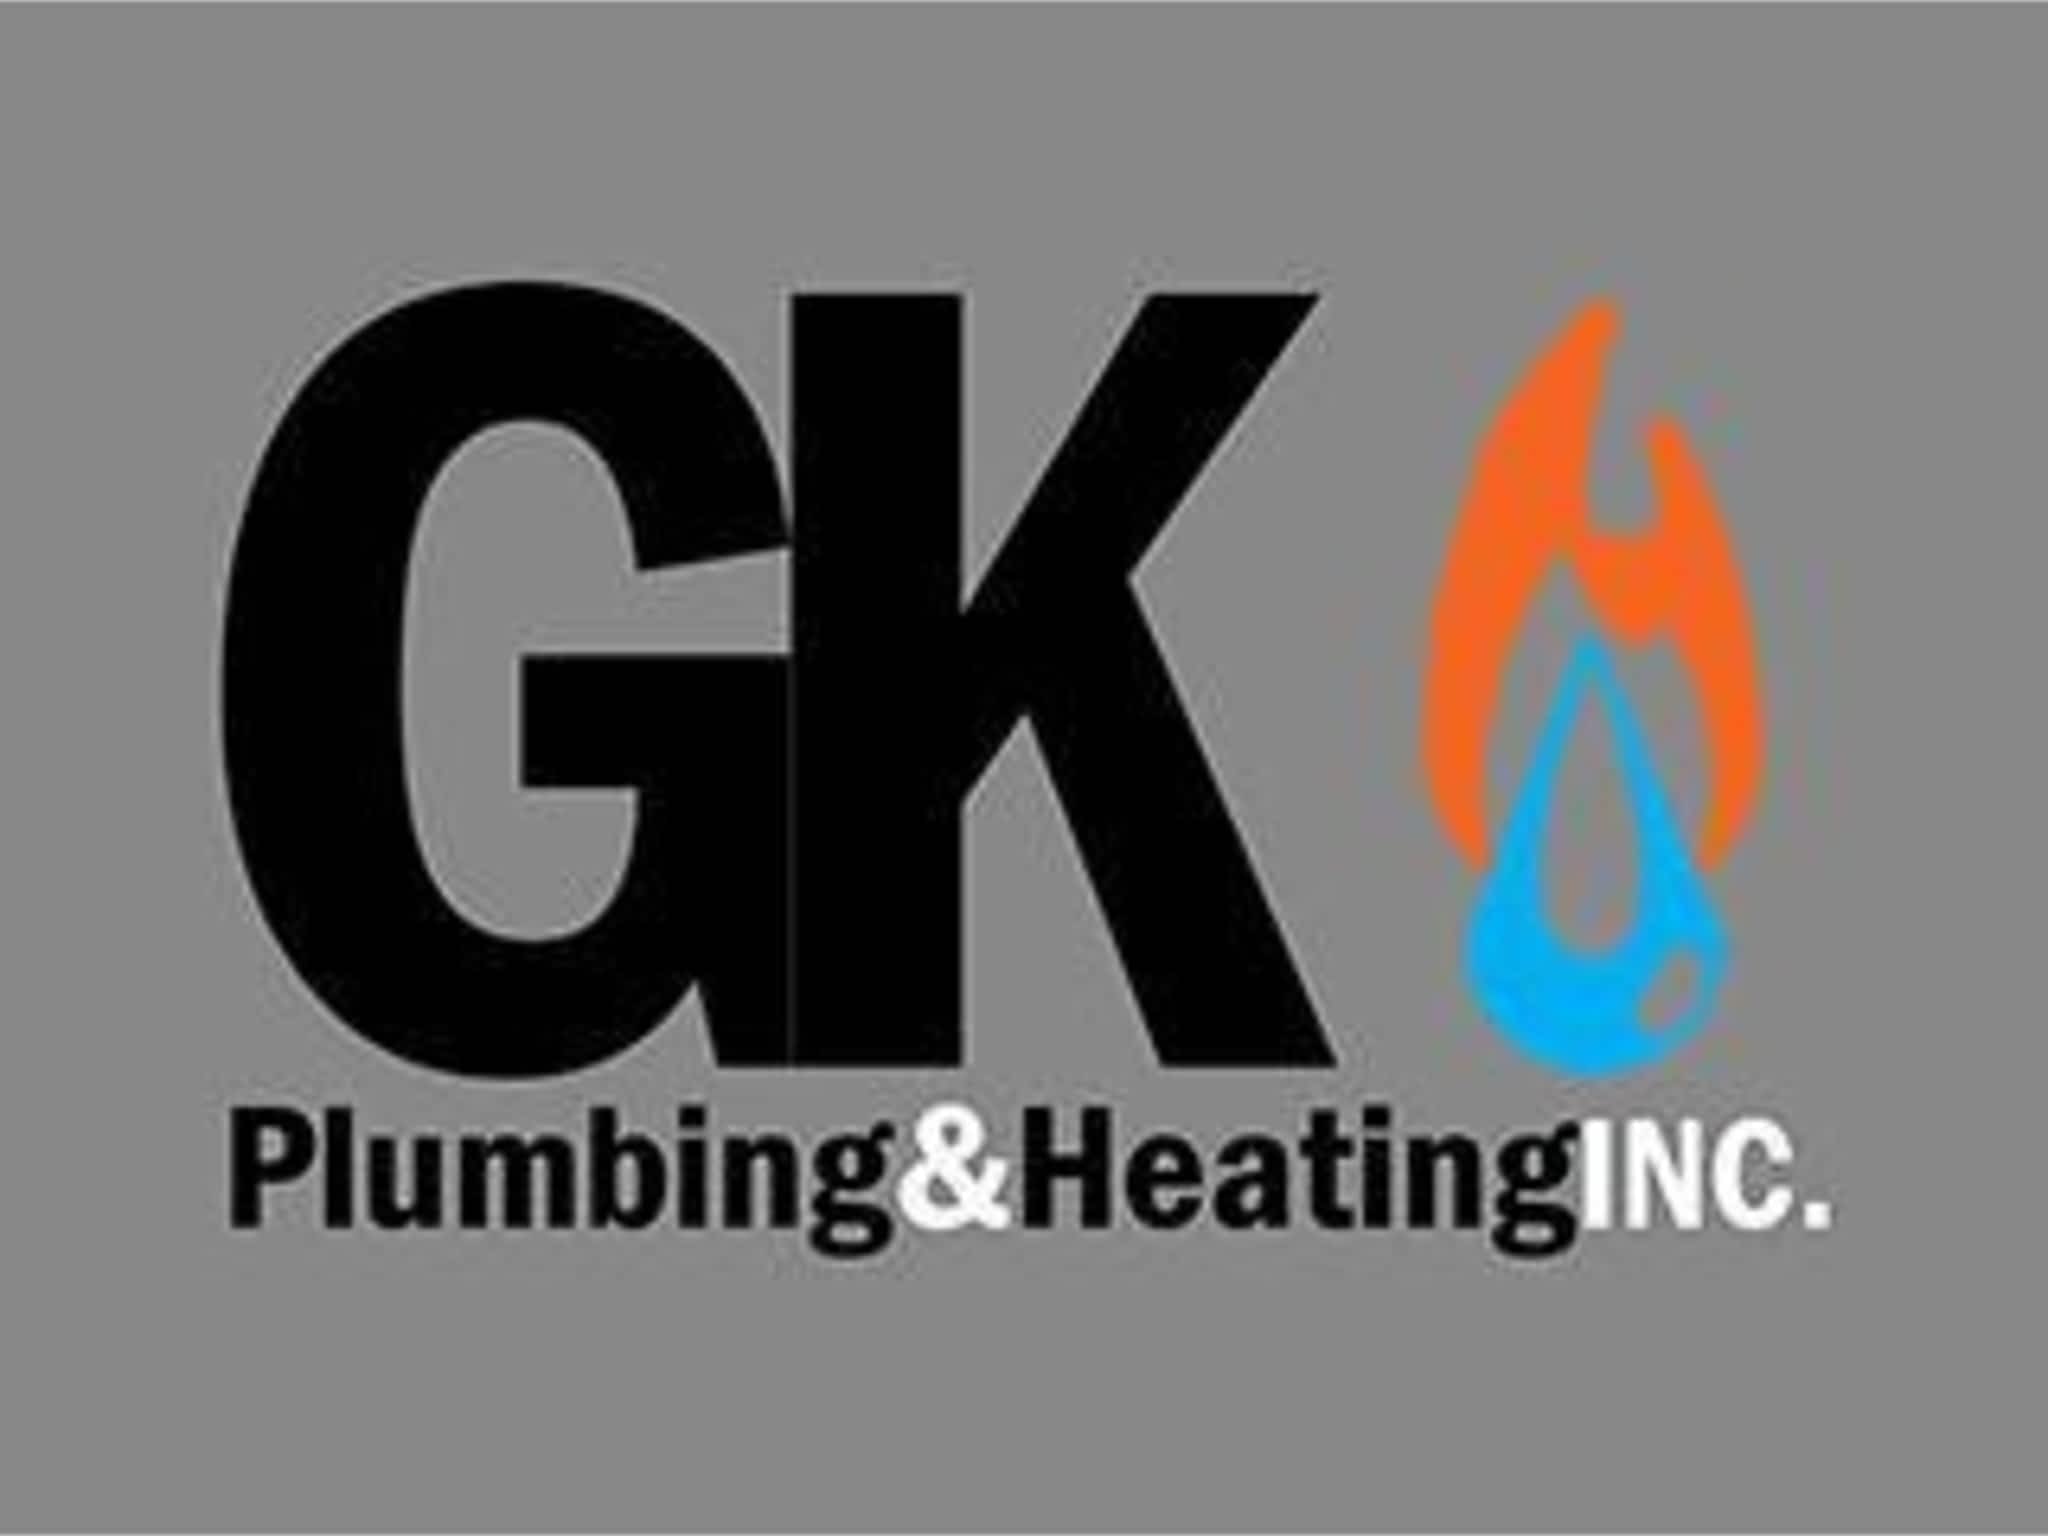 photo GK Plumbing & Heating Inc.